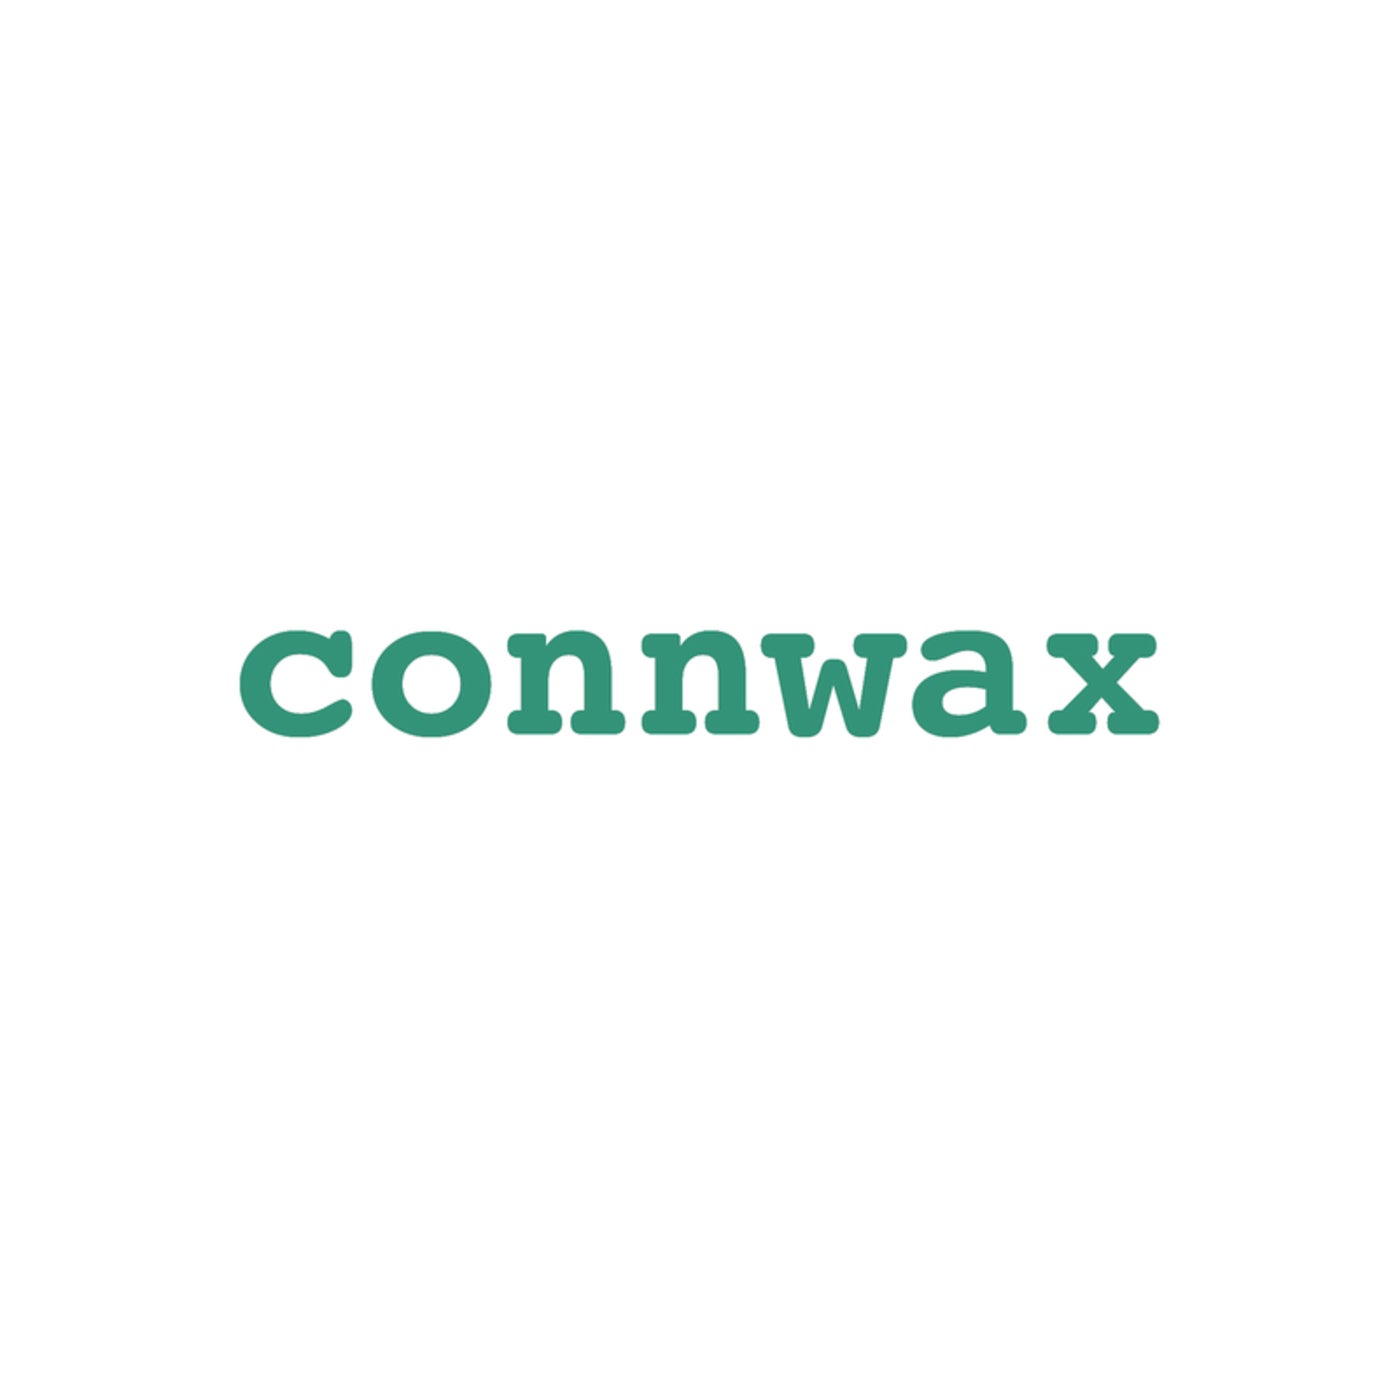 connwax 04